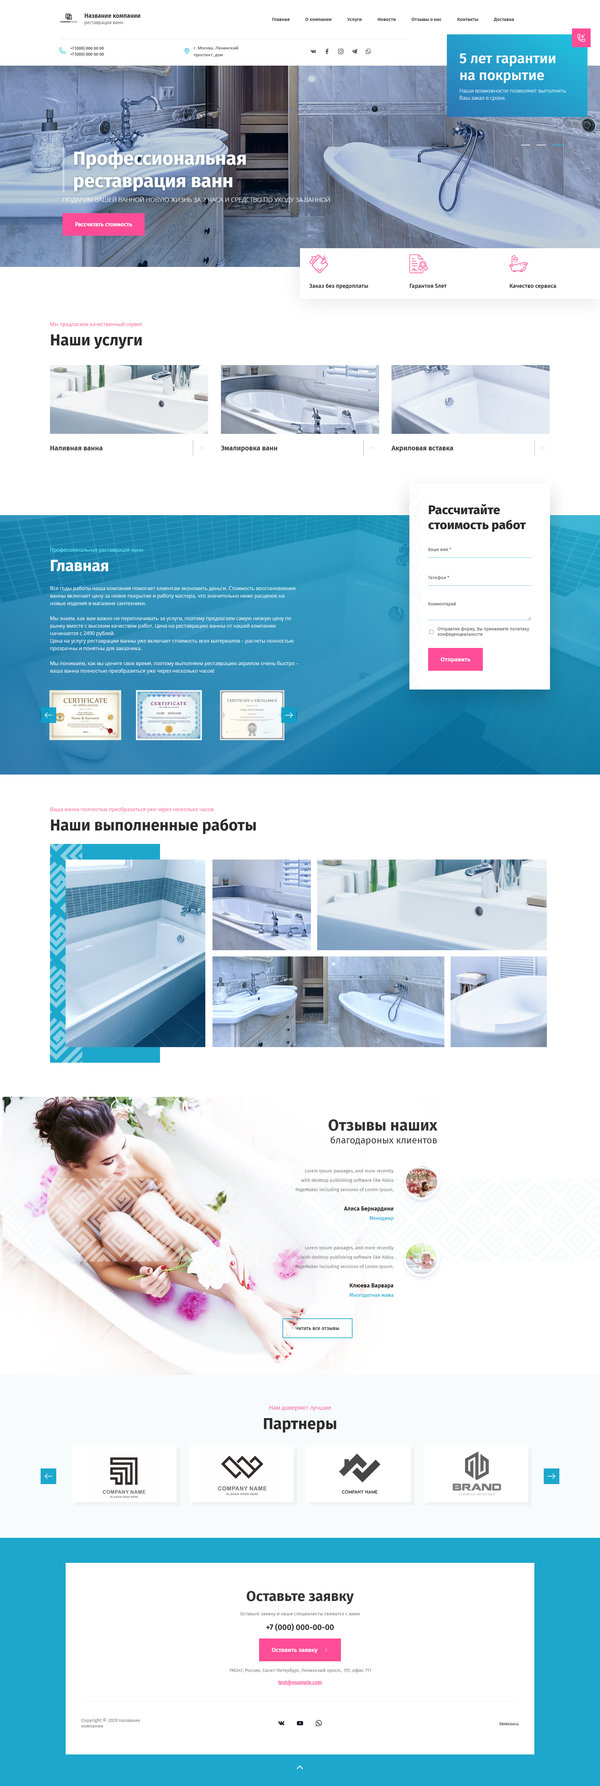 Готовый Сайт-Бизнес № 2807390 - Реставрация ванн (Десктопная версия)